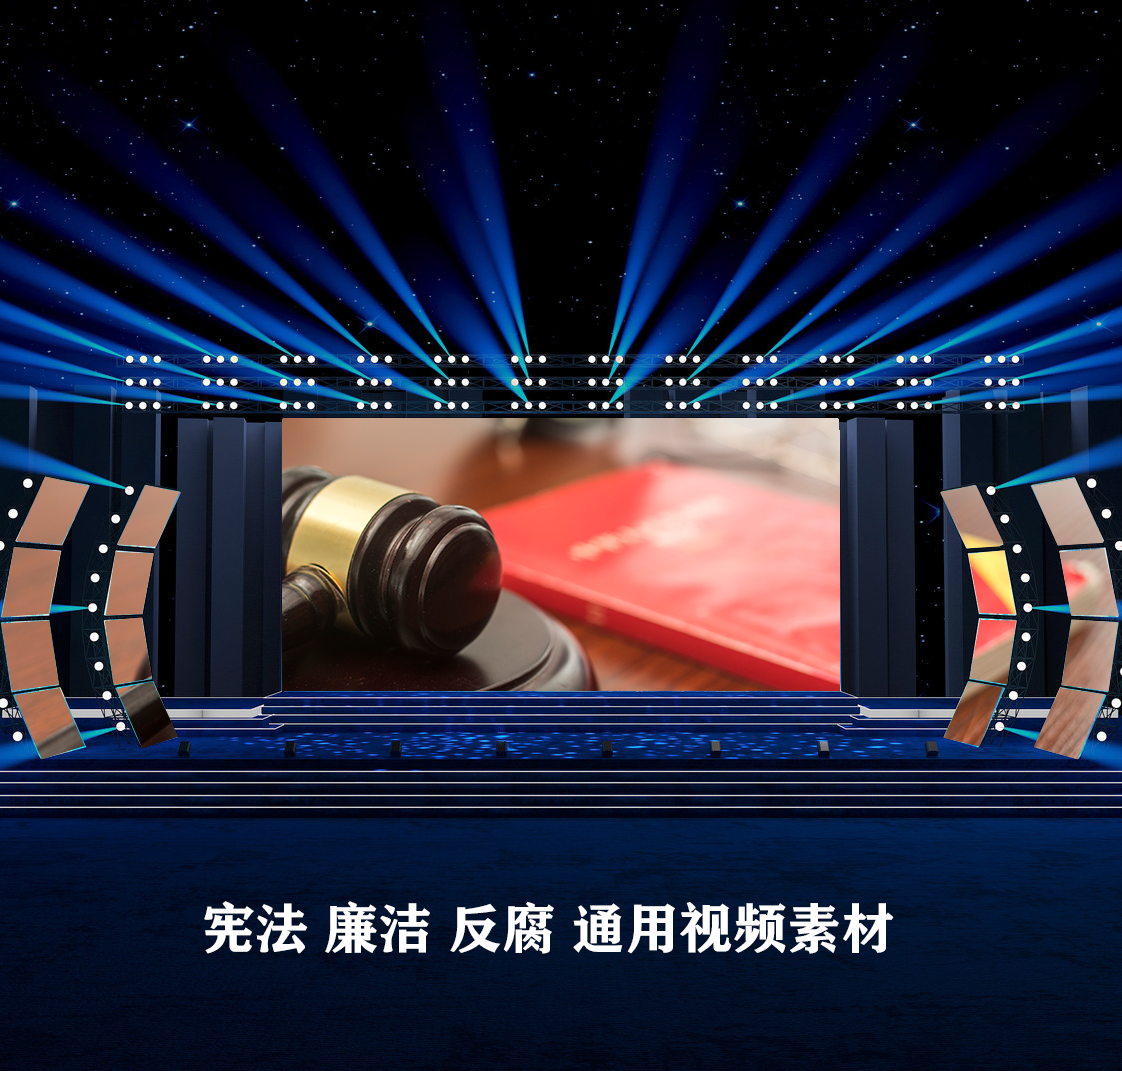 S4357 宪法 爱党爱国演讲诗歌 朗诵LED大屏背景视频素材